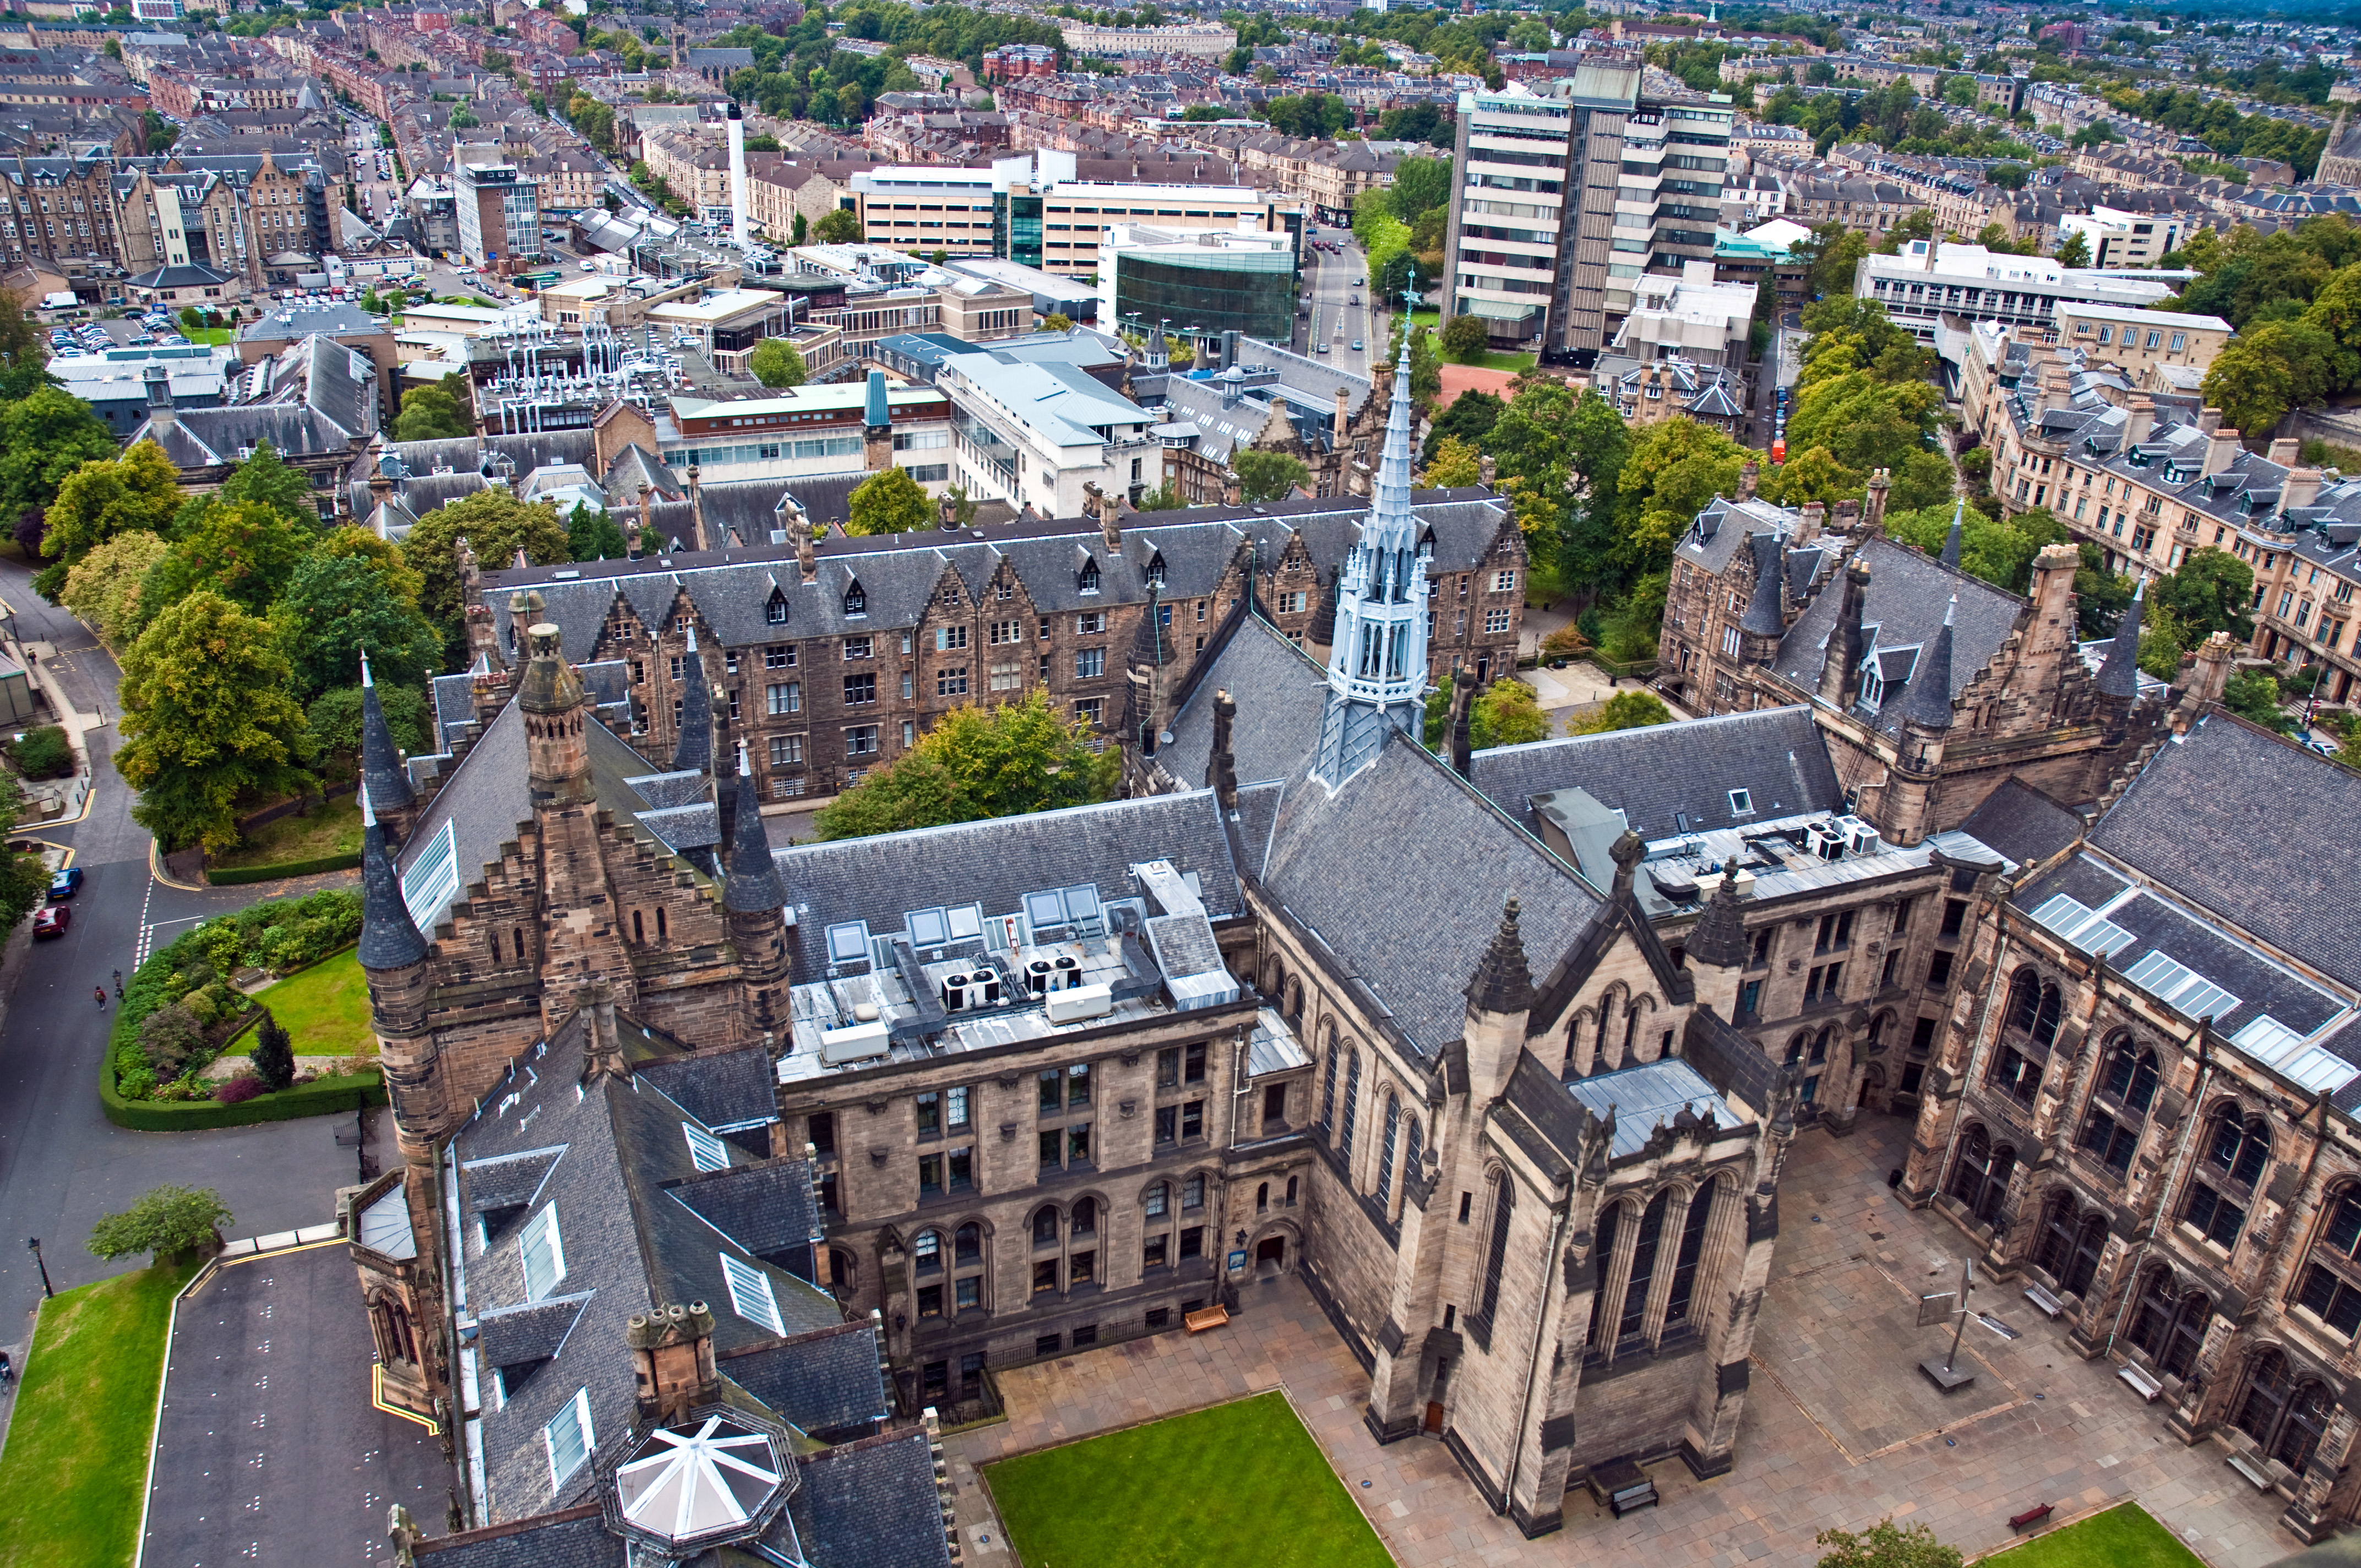 Scotland university. Университет города Глазго. Университет глазо ввеликоб. Глазго столица Шотландии. Глазго, Шотландия, Великобритания.